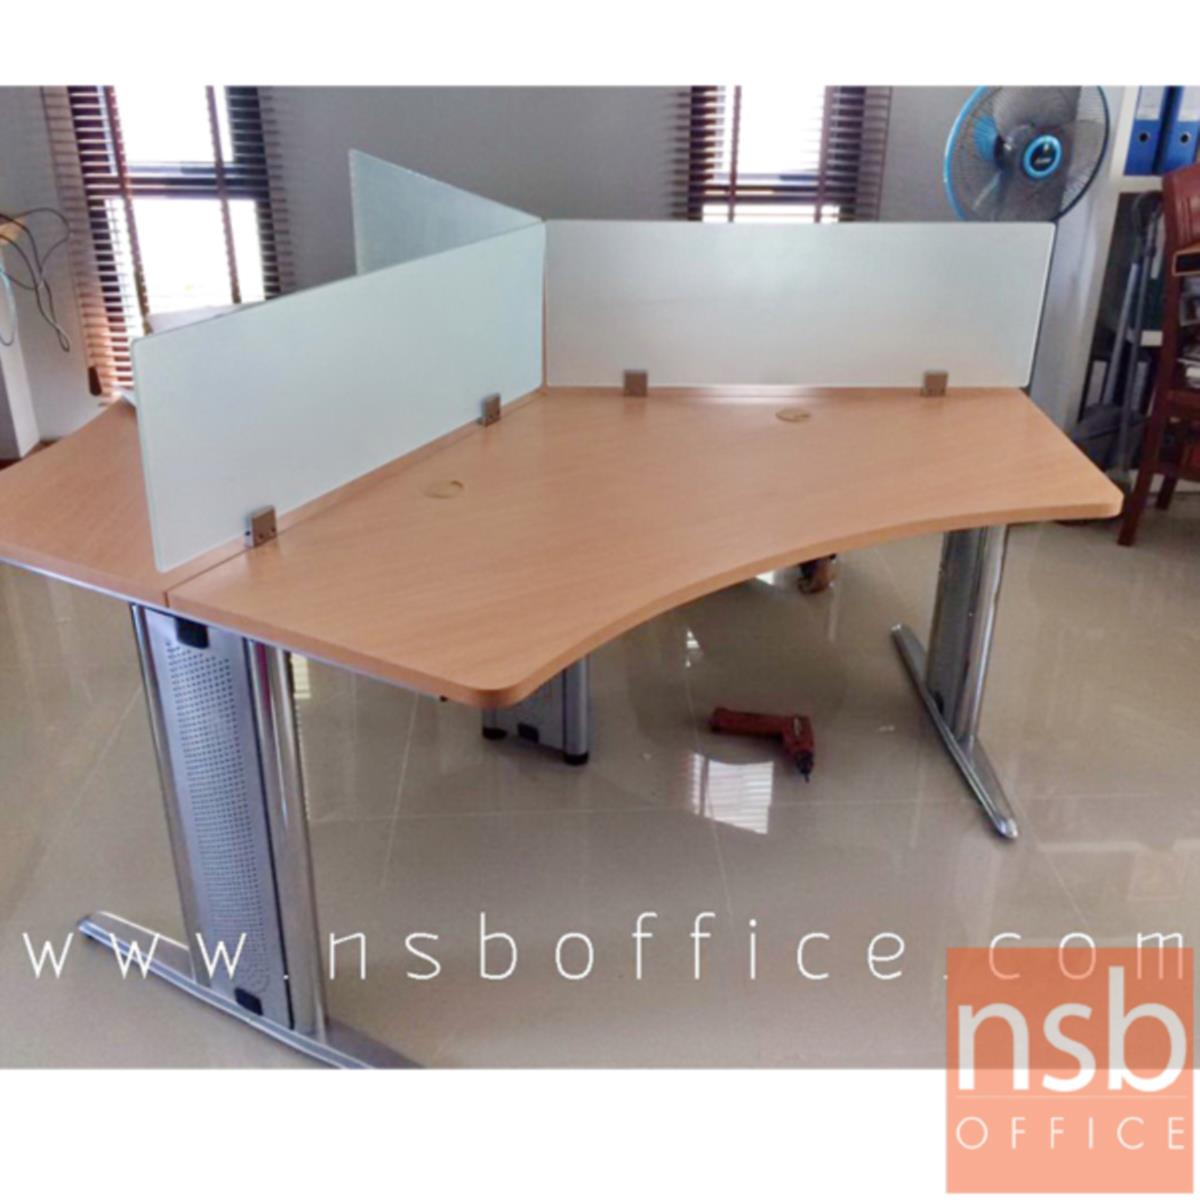 ชุดโต๊ะทำงานกลุ่ม 3 ที่นั่ง  รุ่น NSB-005 ขนาด 90W, 120W cm. พร้อมมินิสกรีน